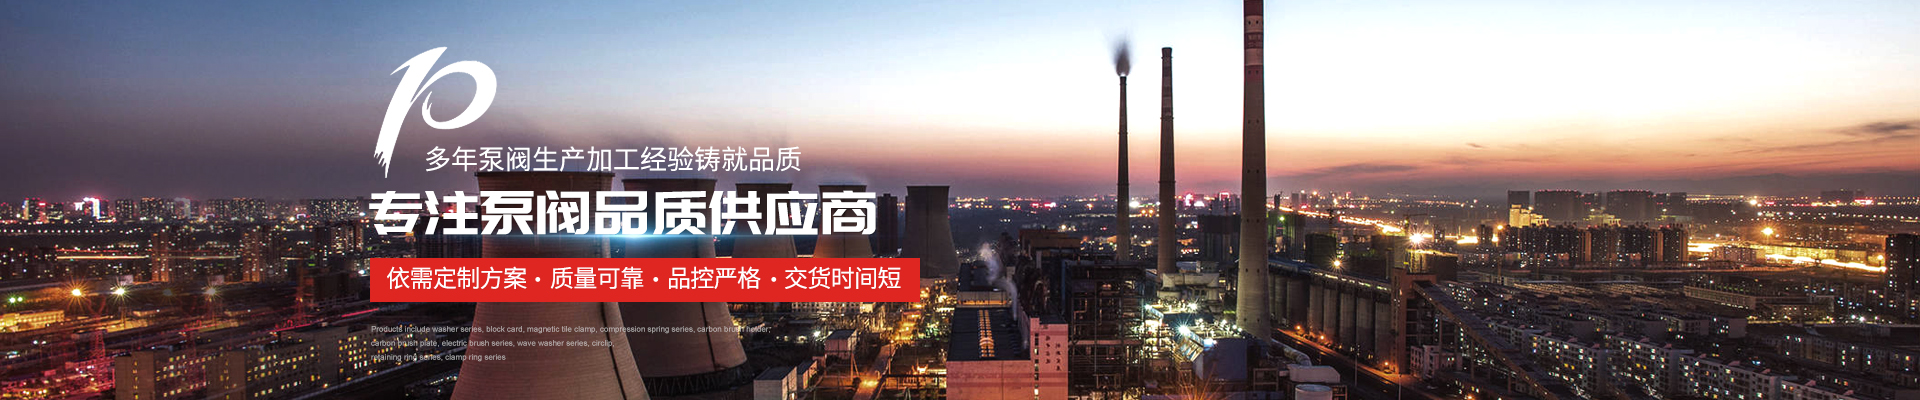 旋渦泵廠家 - 上海高適泵閥有限公司